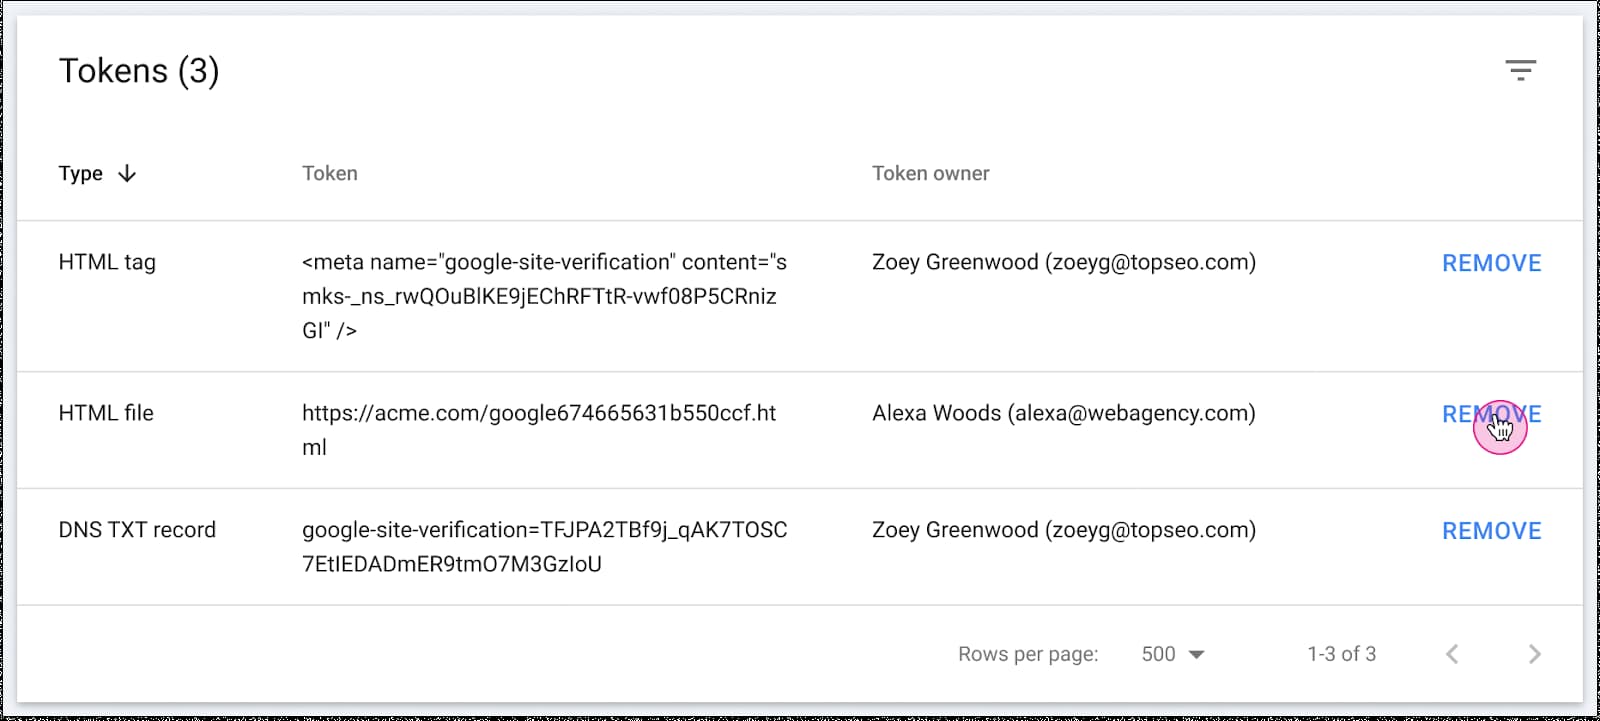 captura de tela mostrando os tokens de permissão do Google Search Console, em uma tabela com tipo, token e proprietário do token